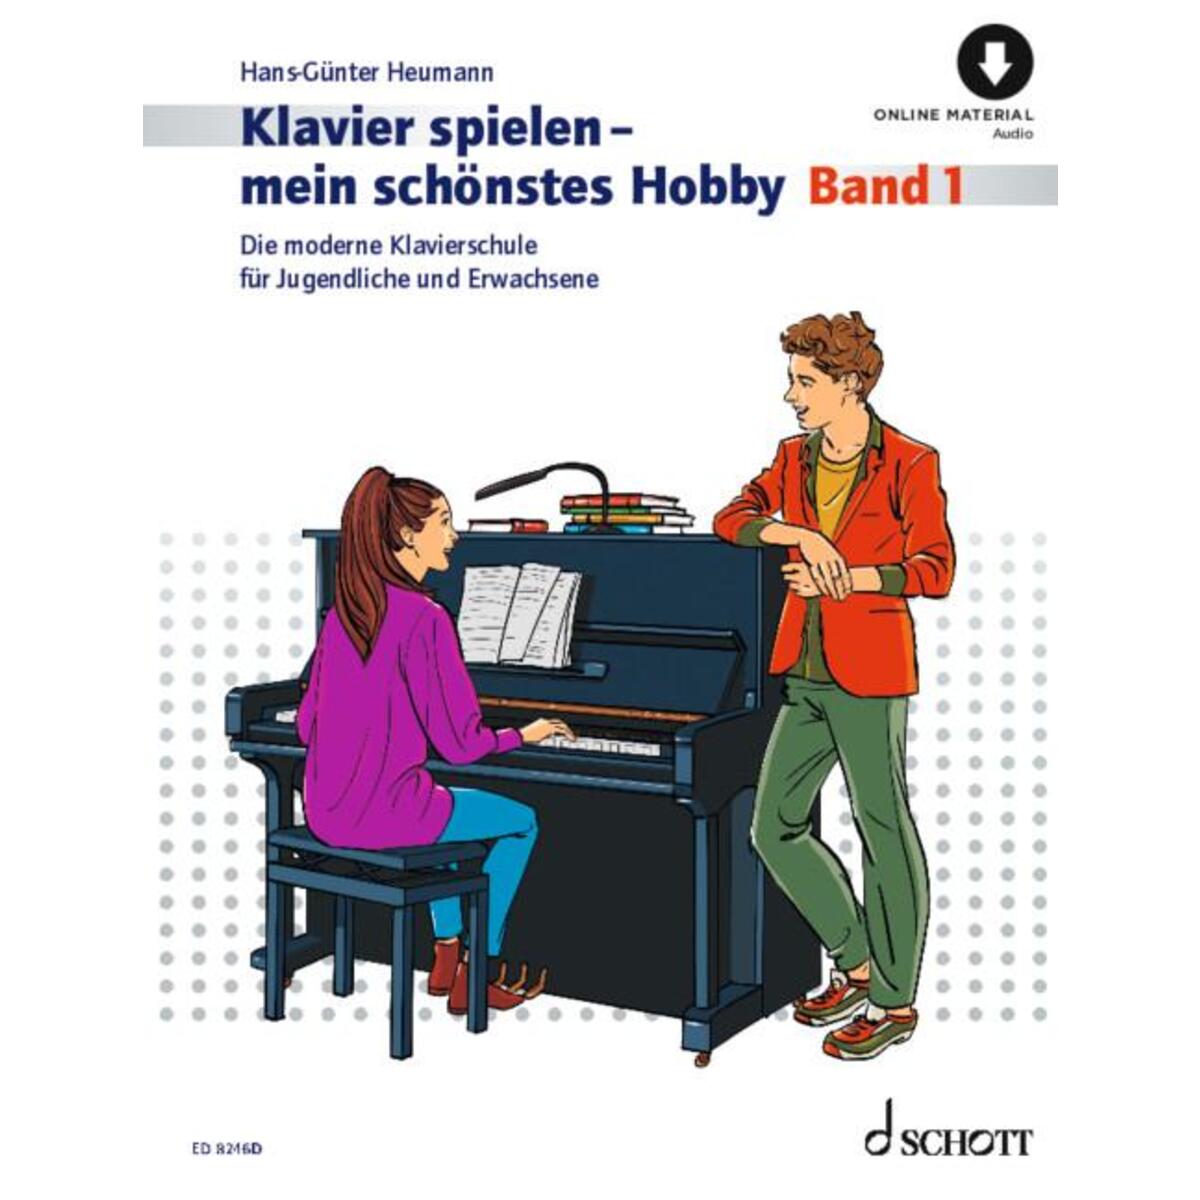 Klavierspielen - mein schönstes Hobby Band 1 von Schott Music